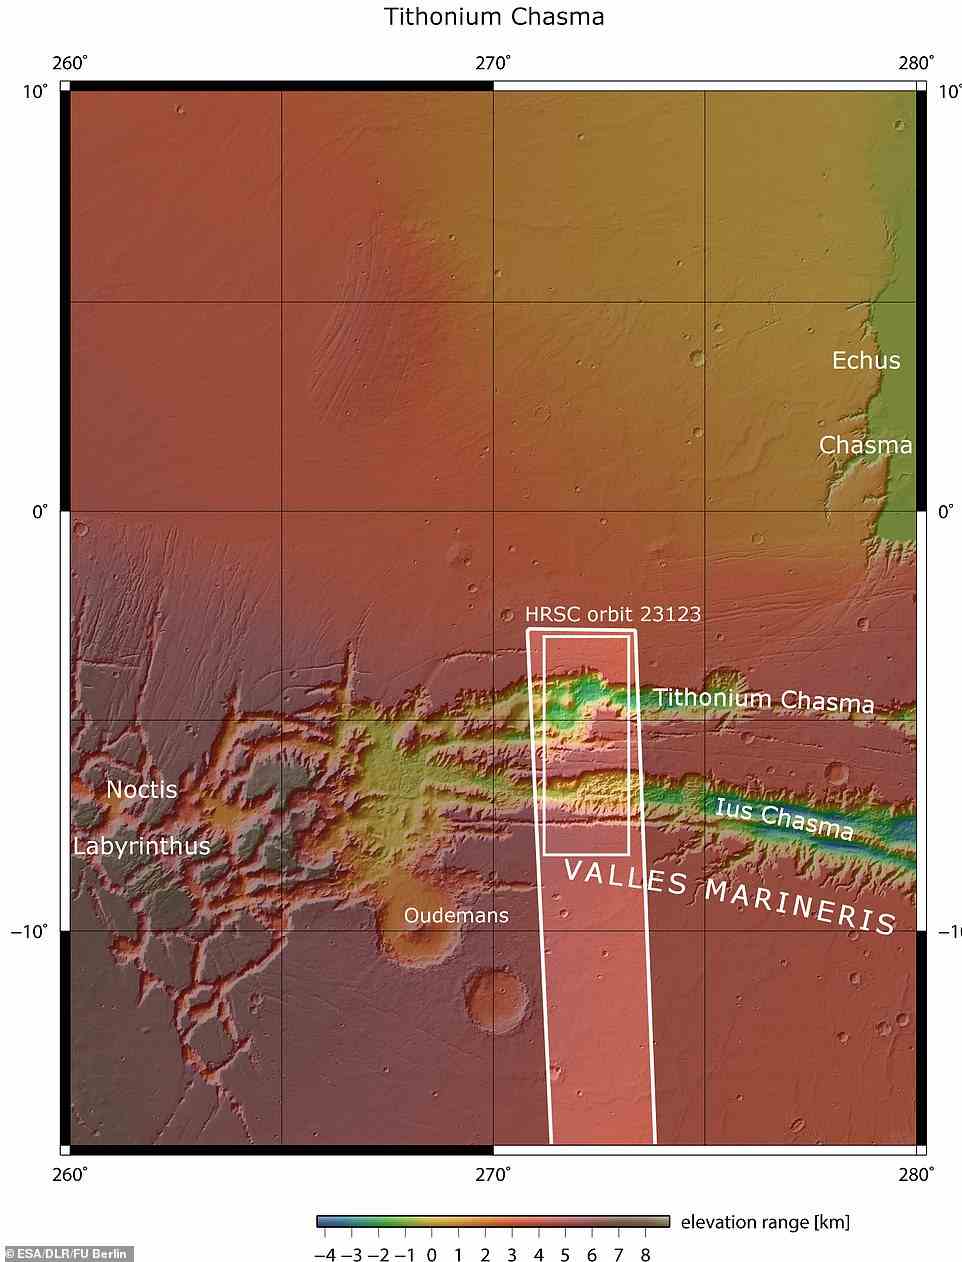 Lus und Tithonium Chasmata sind oben zu sehen.  Der durch das fette weiße Kästchen umrandete Bereich zeigt den Bereich, der von der Mars Express High Resolution Stereo Camera am 21. April 2022 während der Umlaufbahn abgebildet wurde